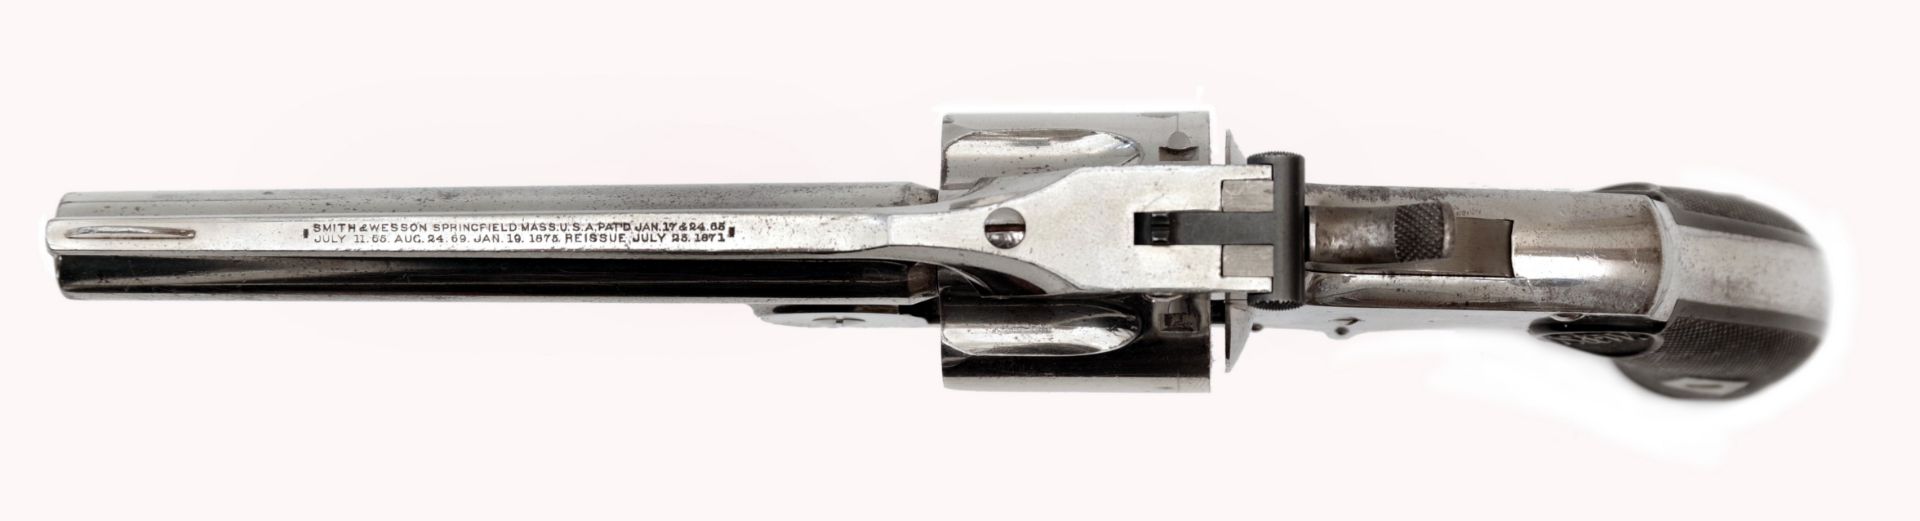 Smith & Wesson Baby Russian Revolver 38 S&W 1. Model - Bild 2 aus 3